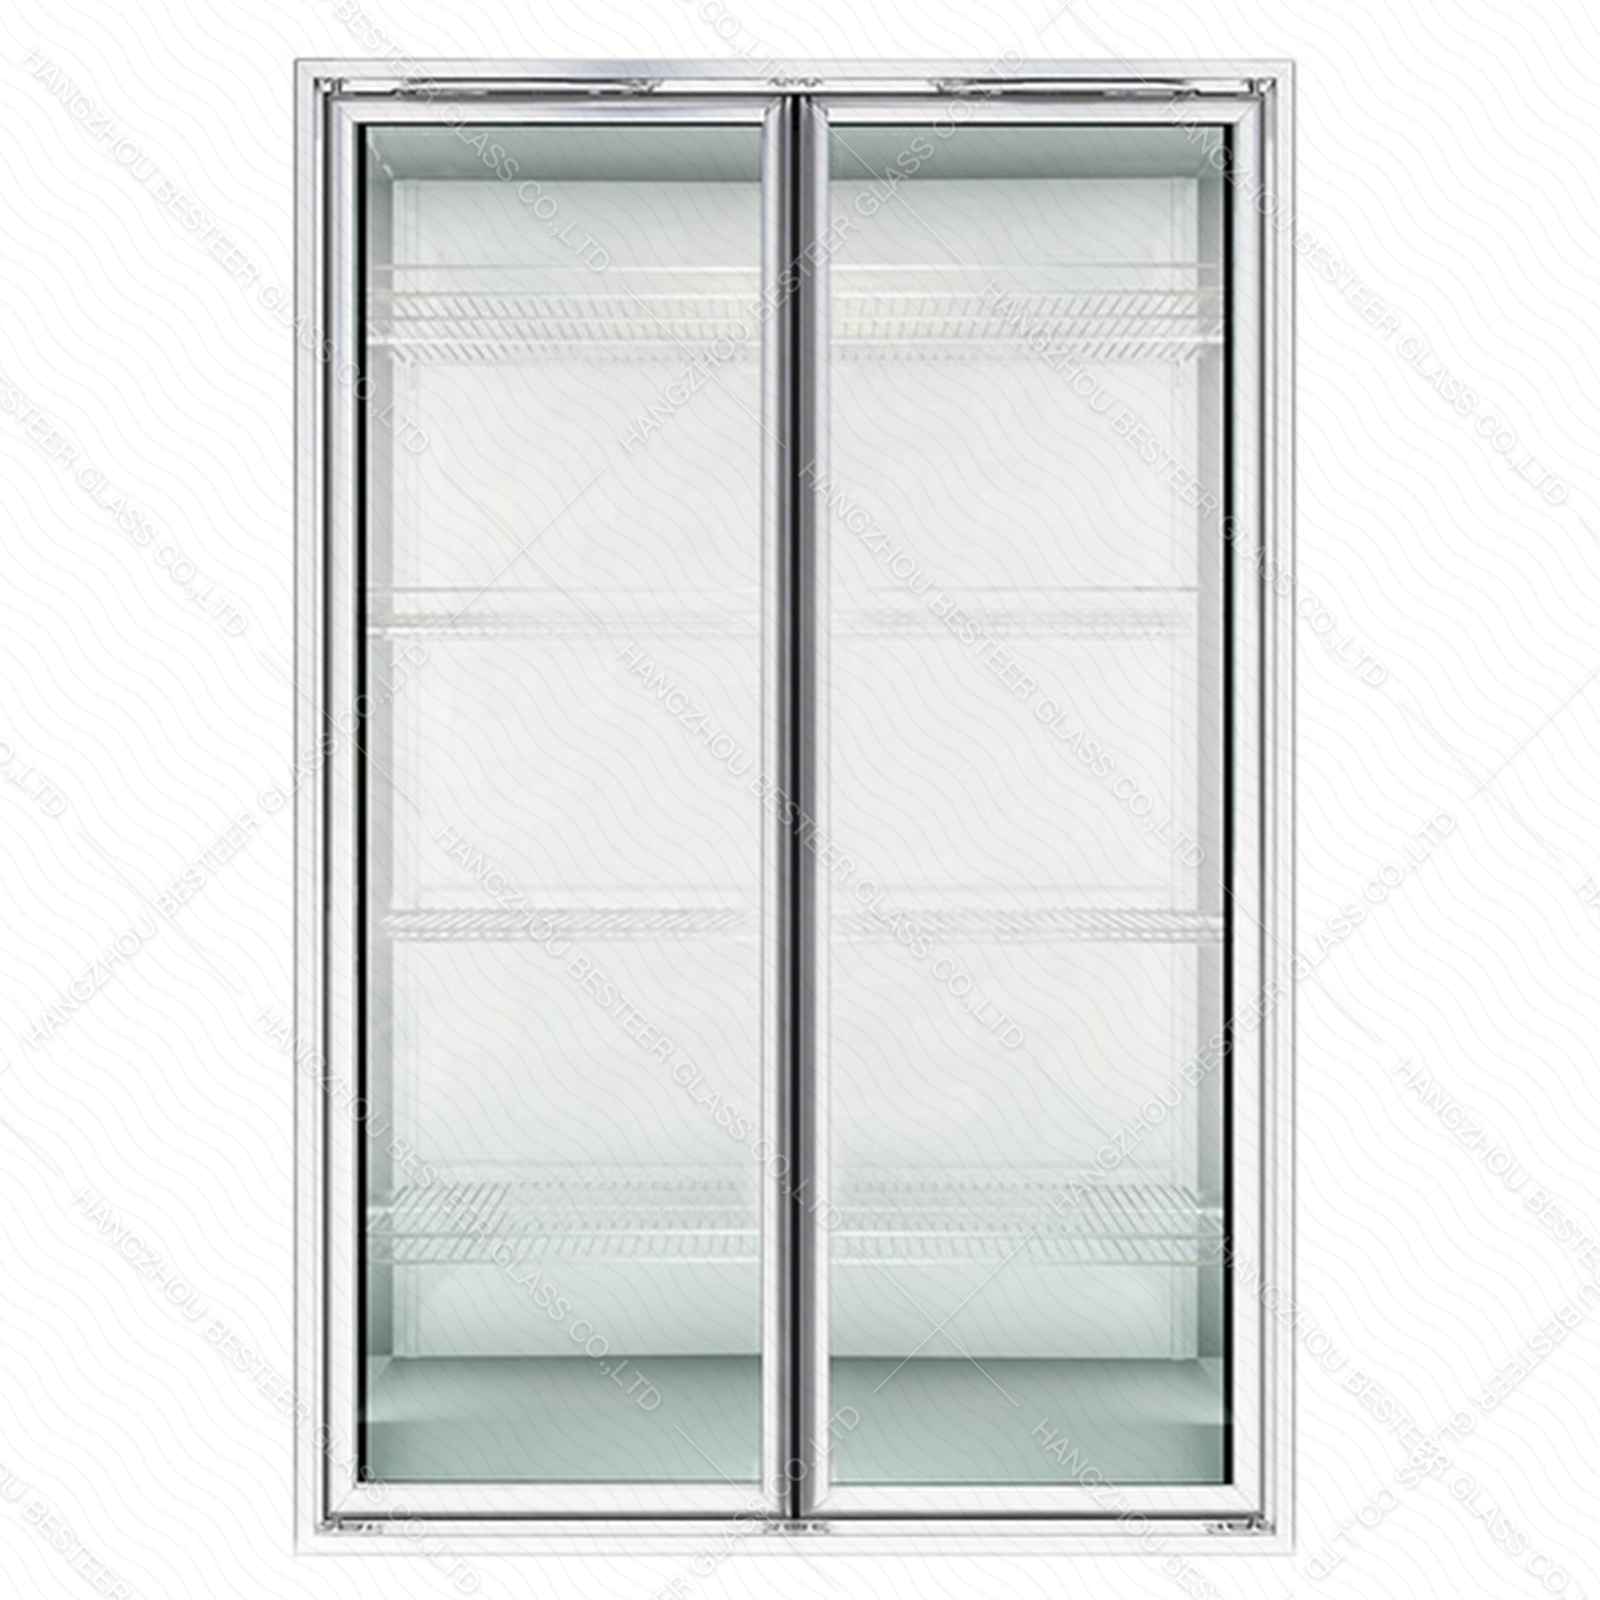 Puerta de vidrio aislante templado de baja emisividad con triple acristalamiento para refrigerador